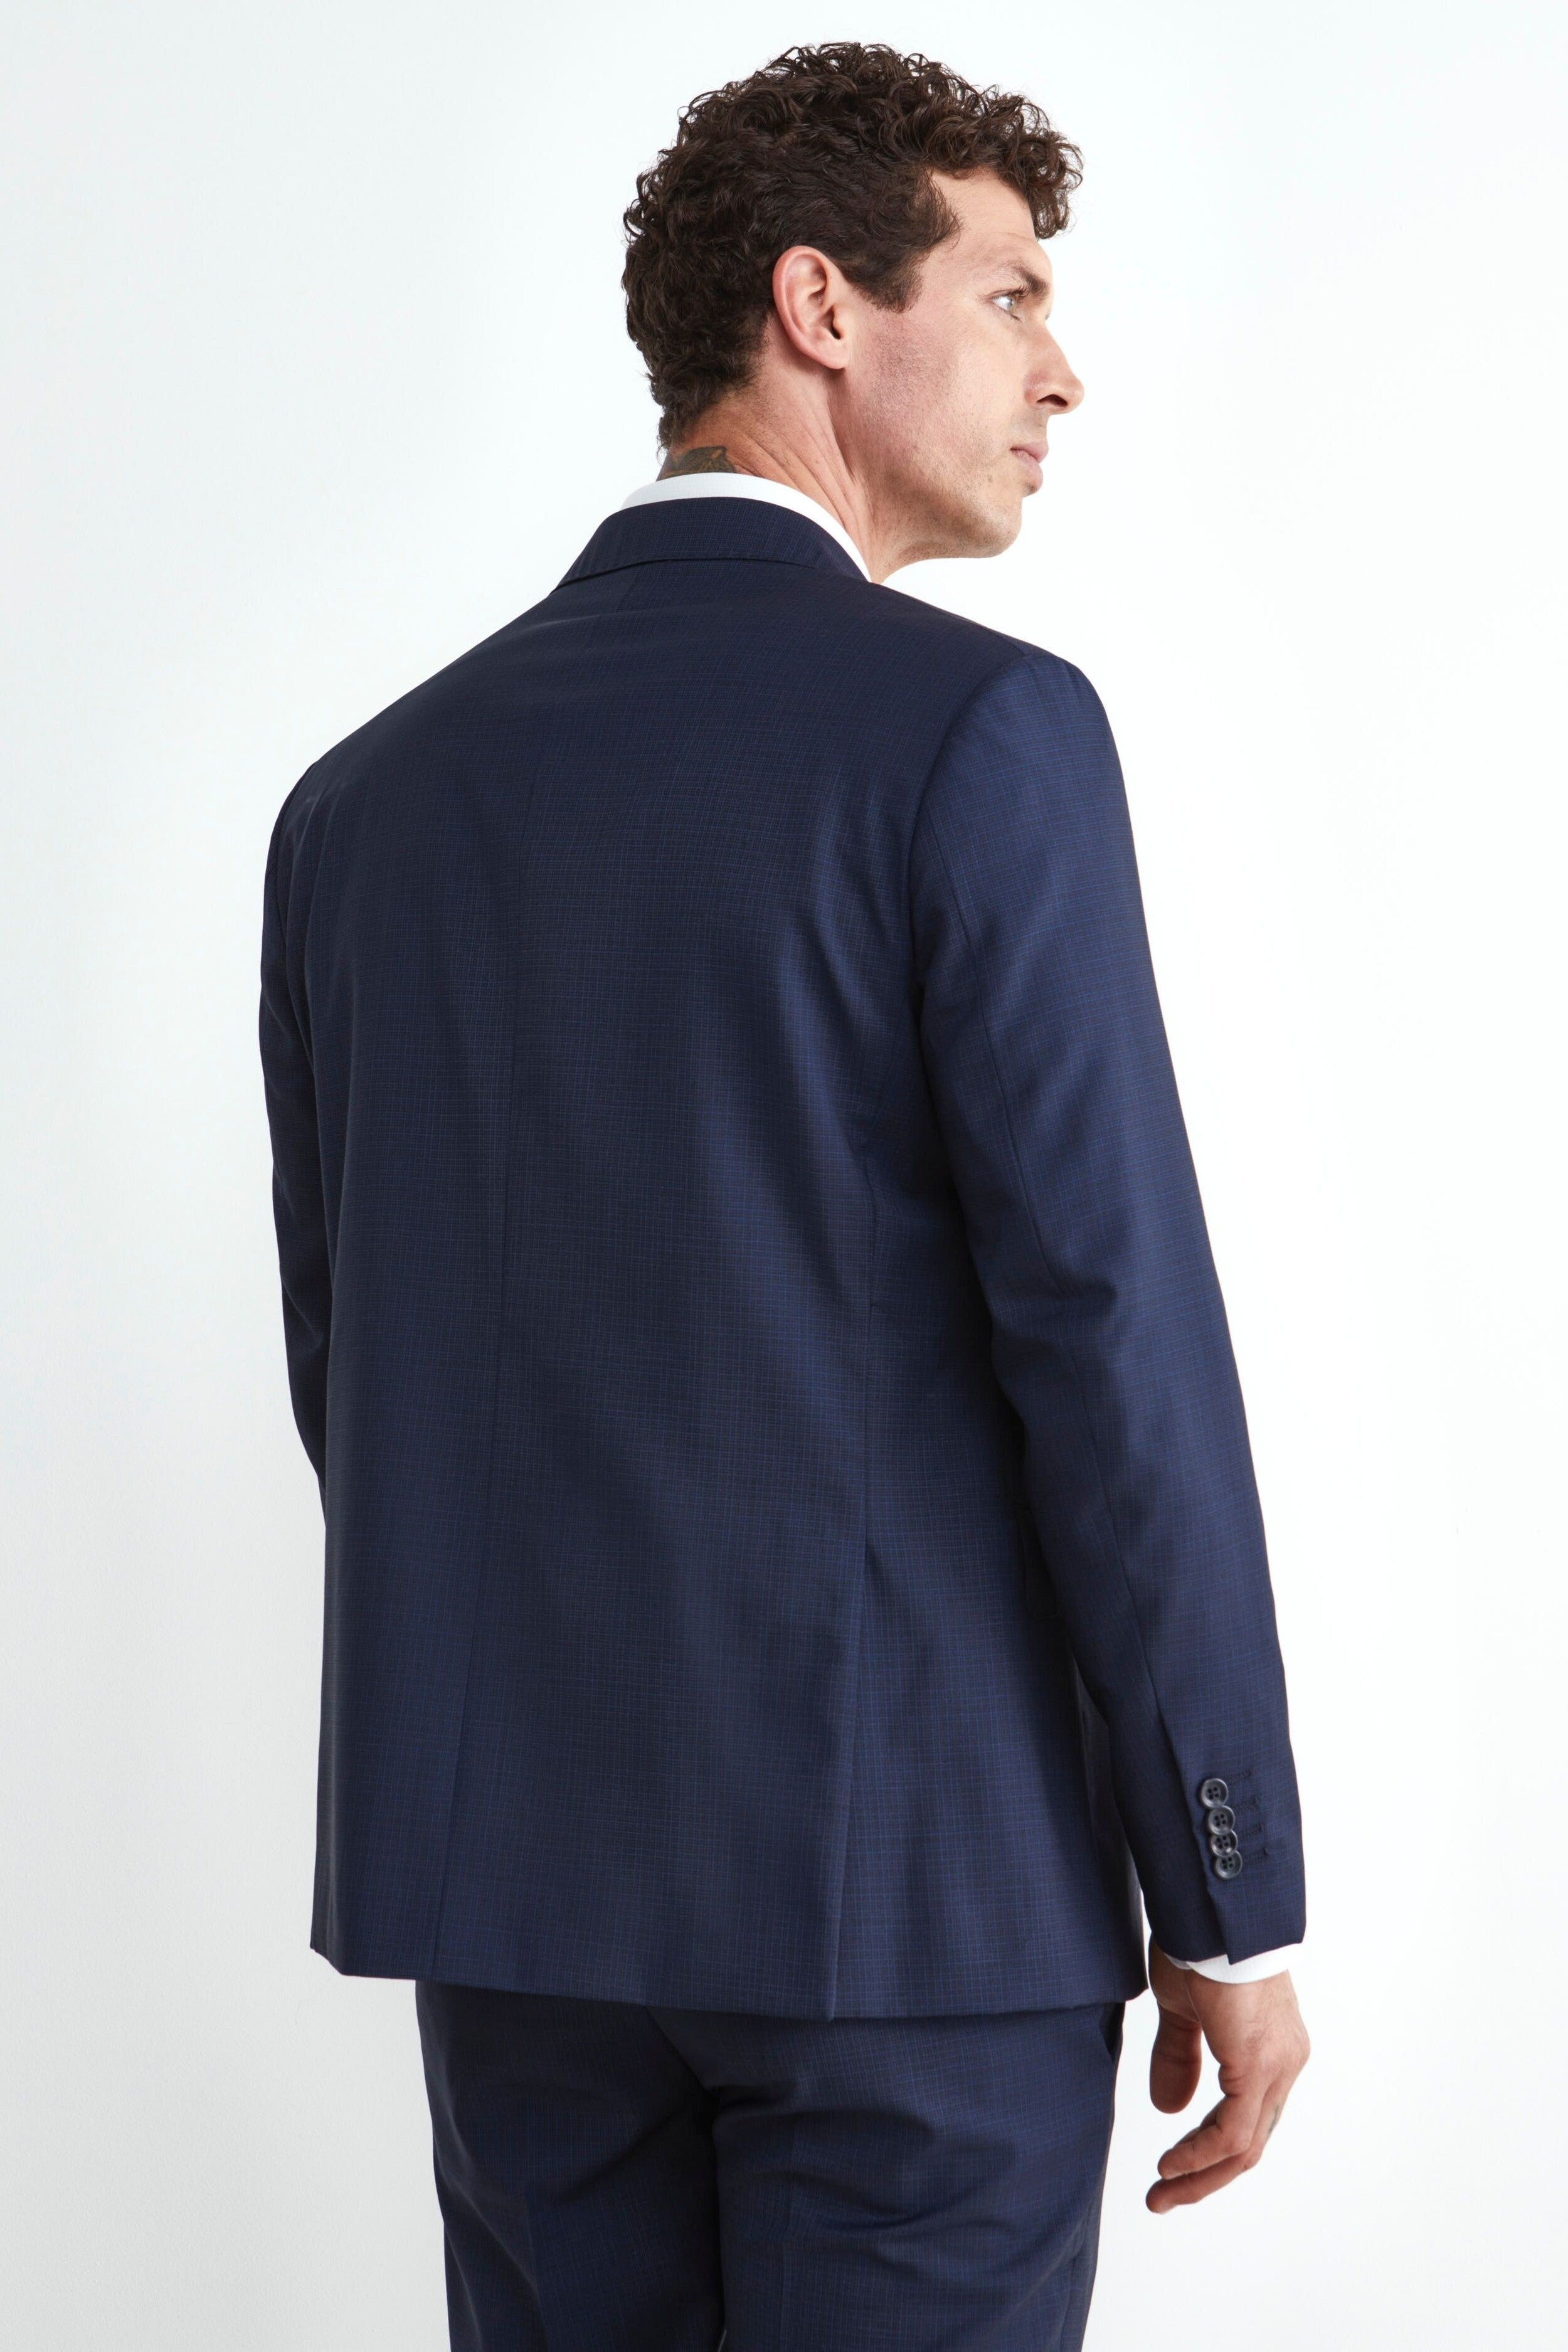 Elegant Blue Check Suit - Blue pattern